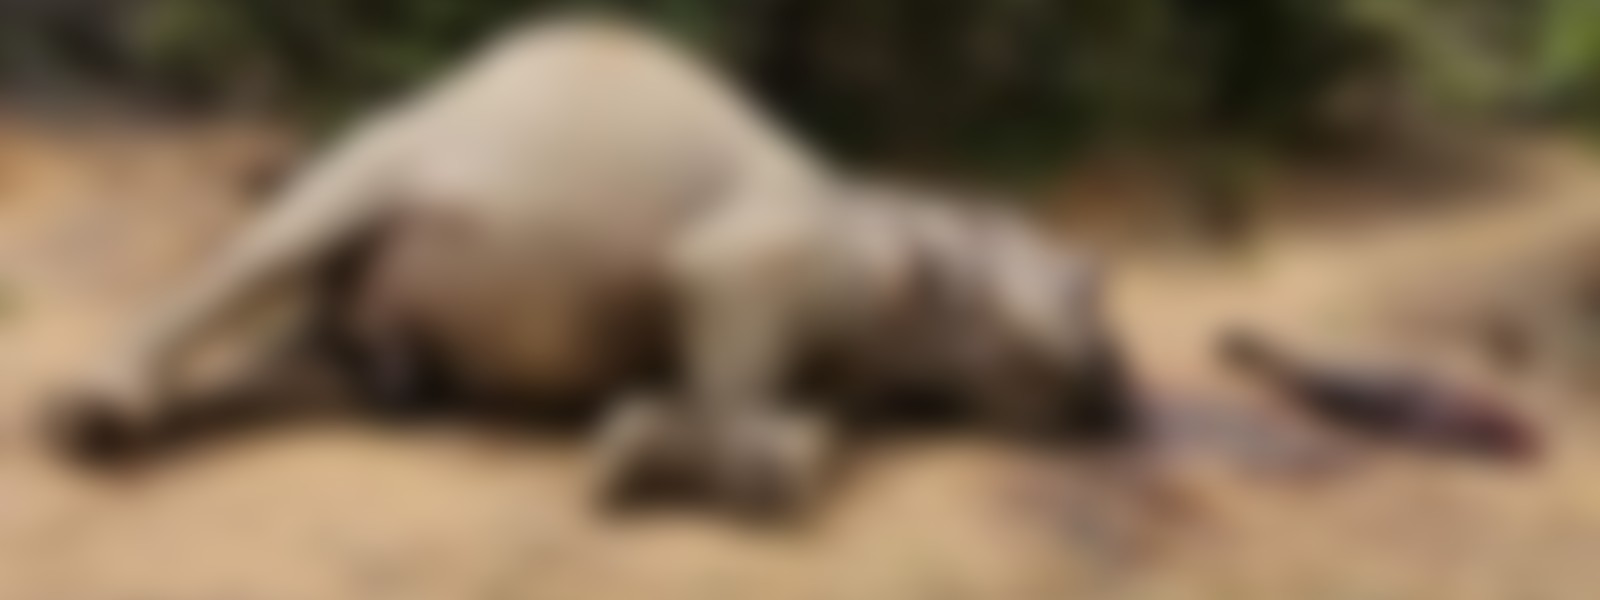 Killing & Dismembering Yala Elephant : One suspect arrested